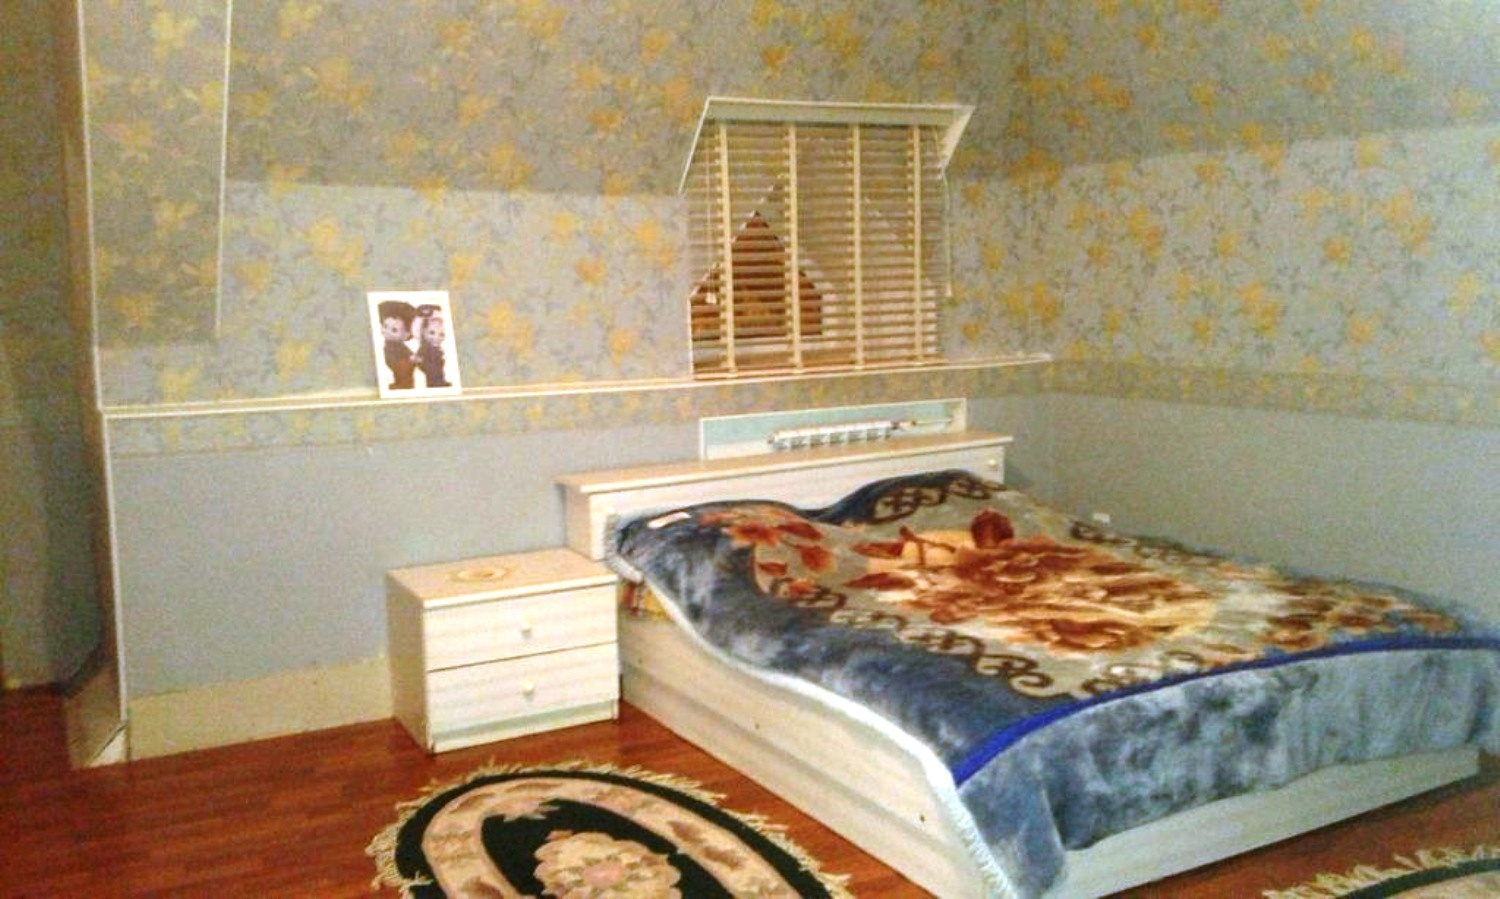 Спальня в доме оформлена в спокойных цветах